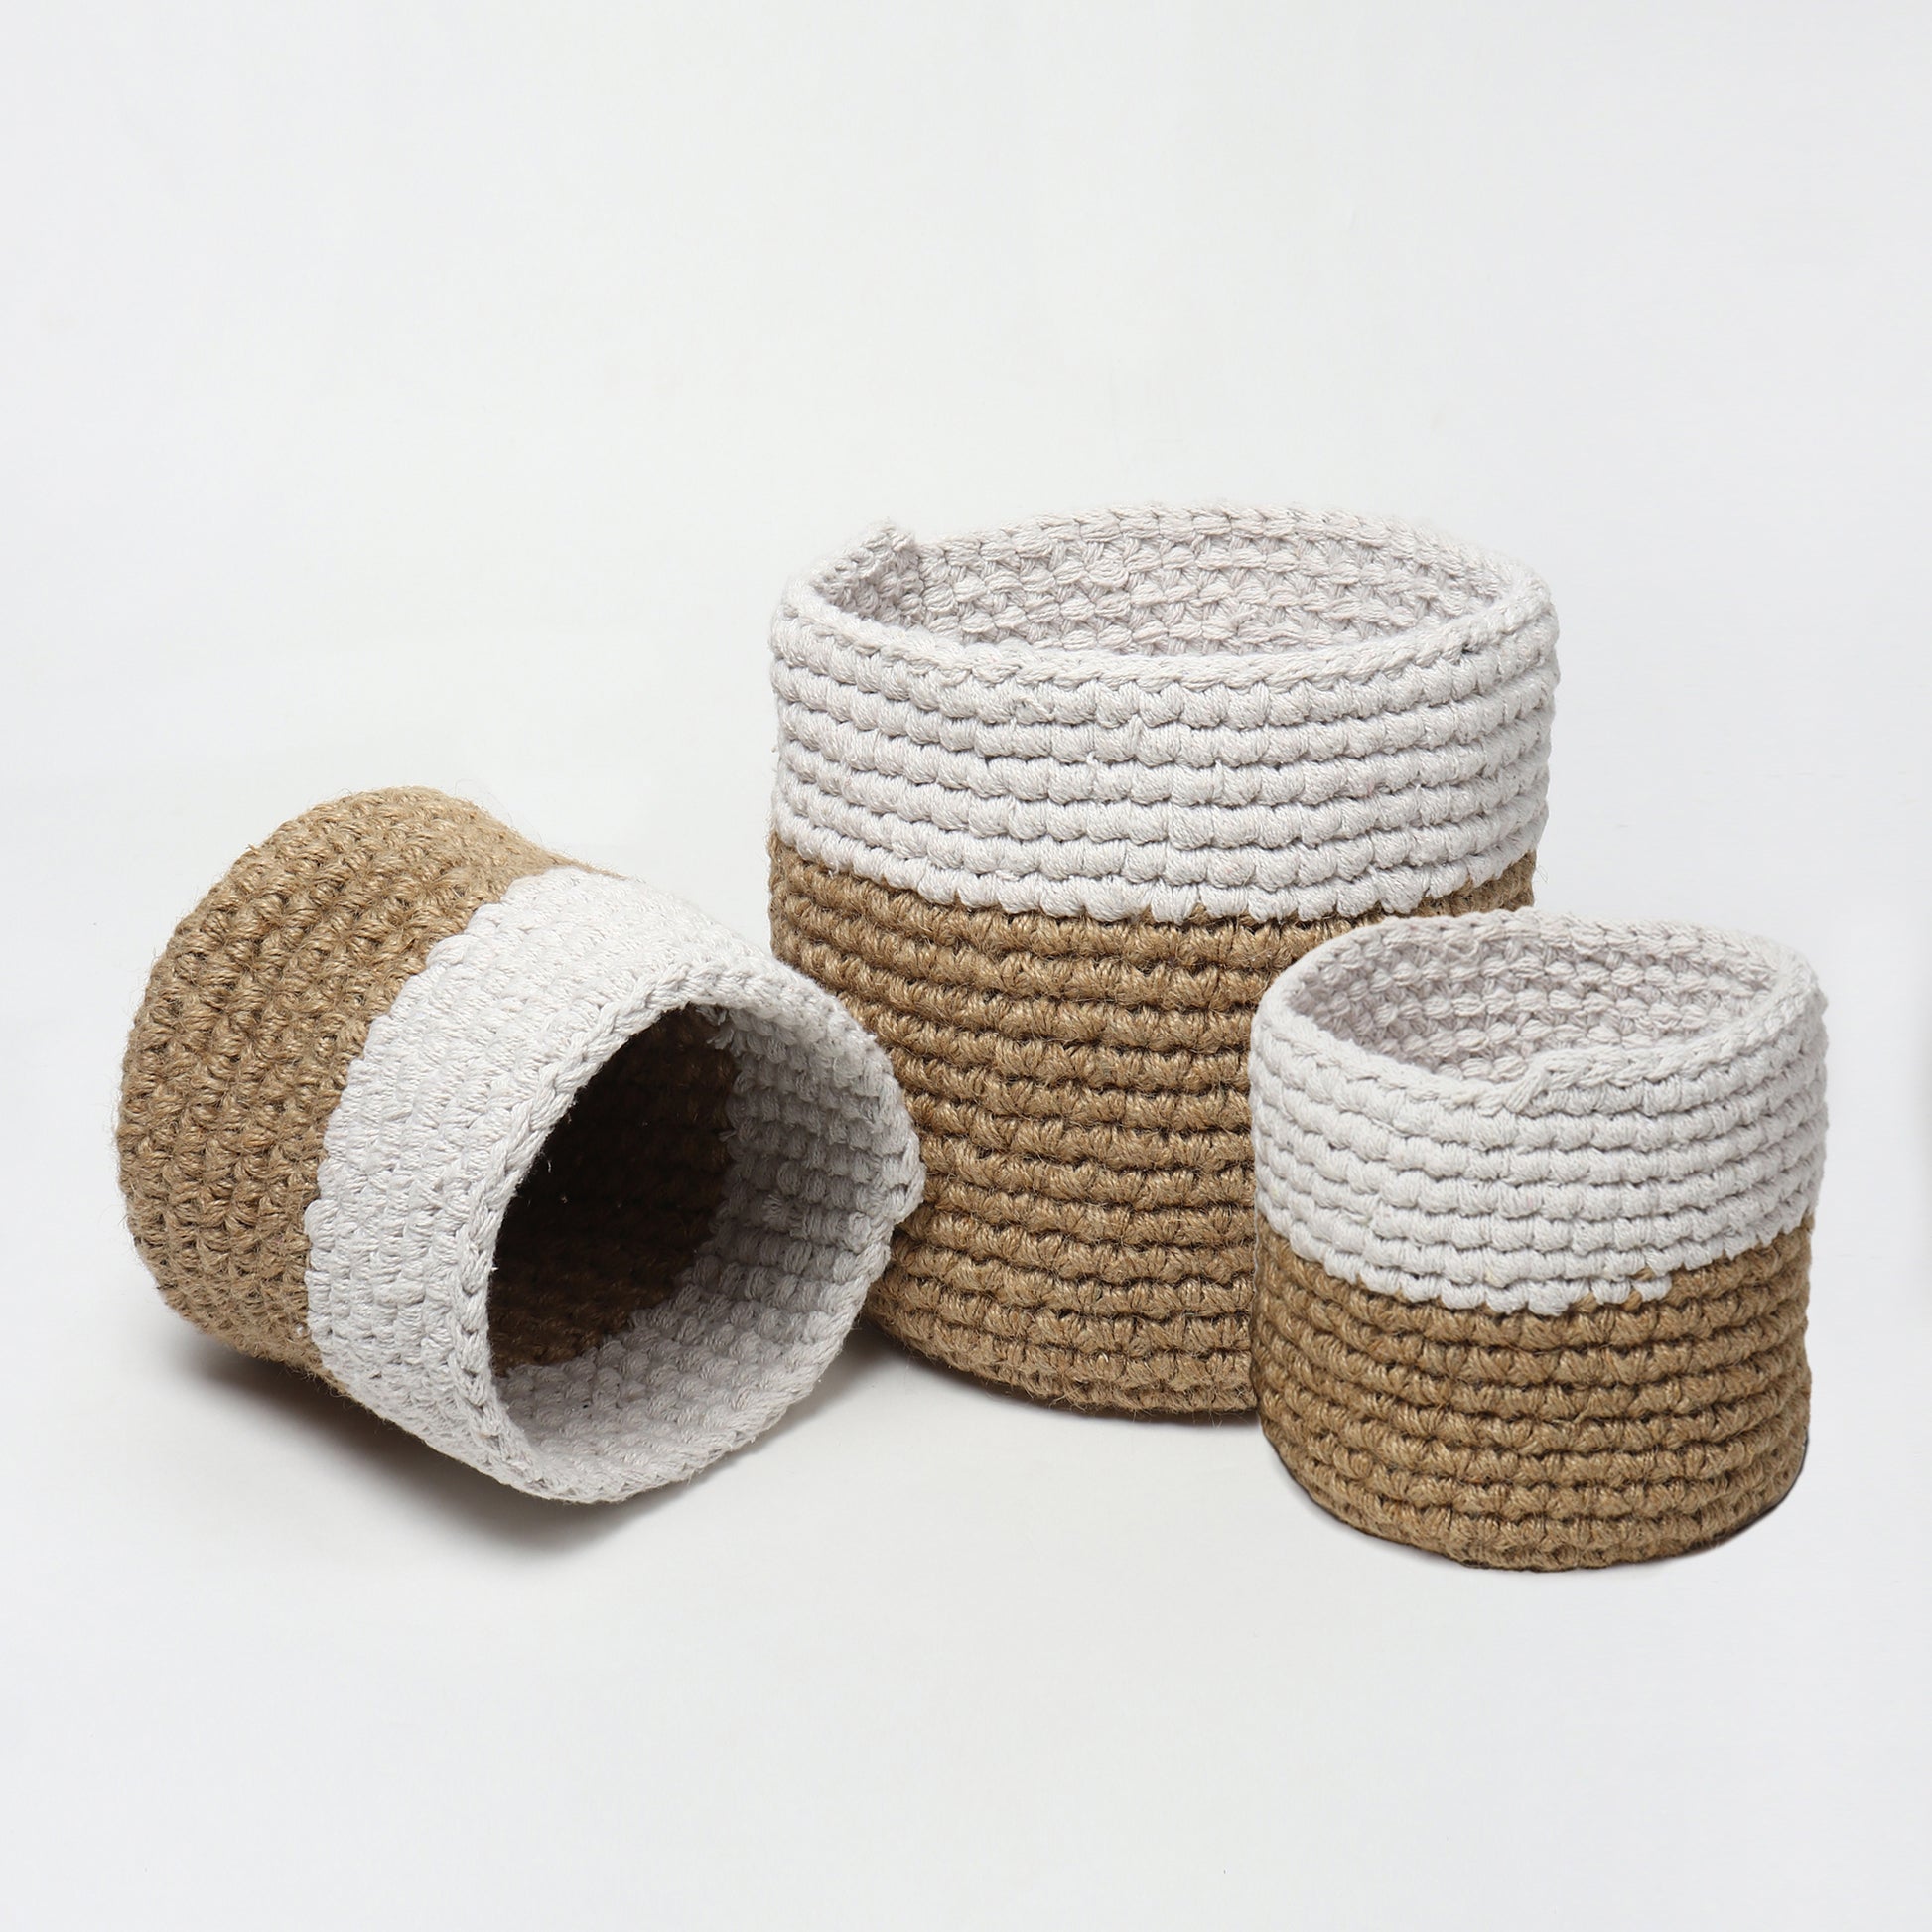  Jute Crochet Storage Basket